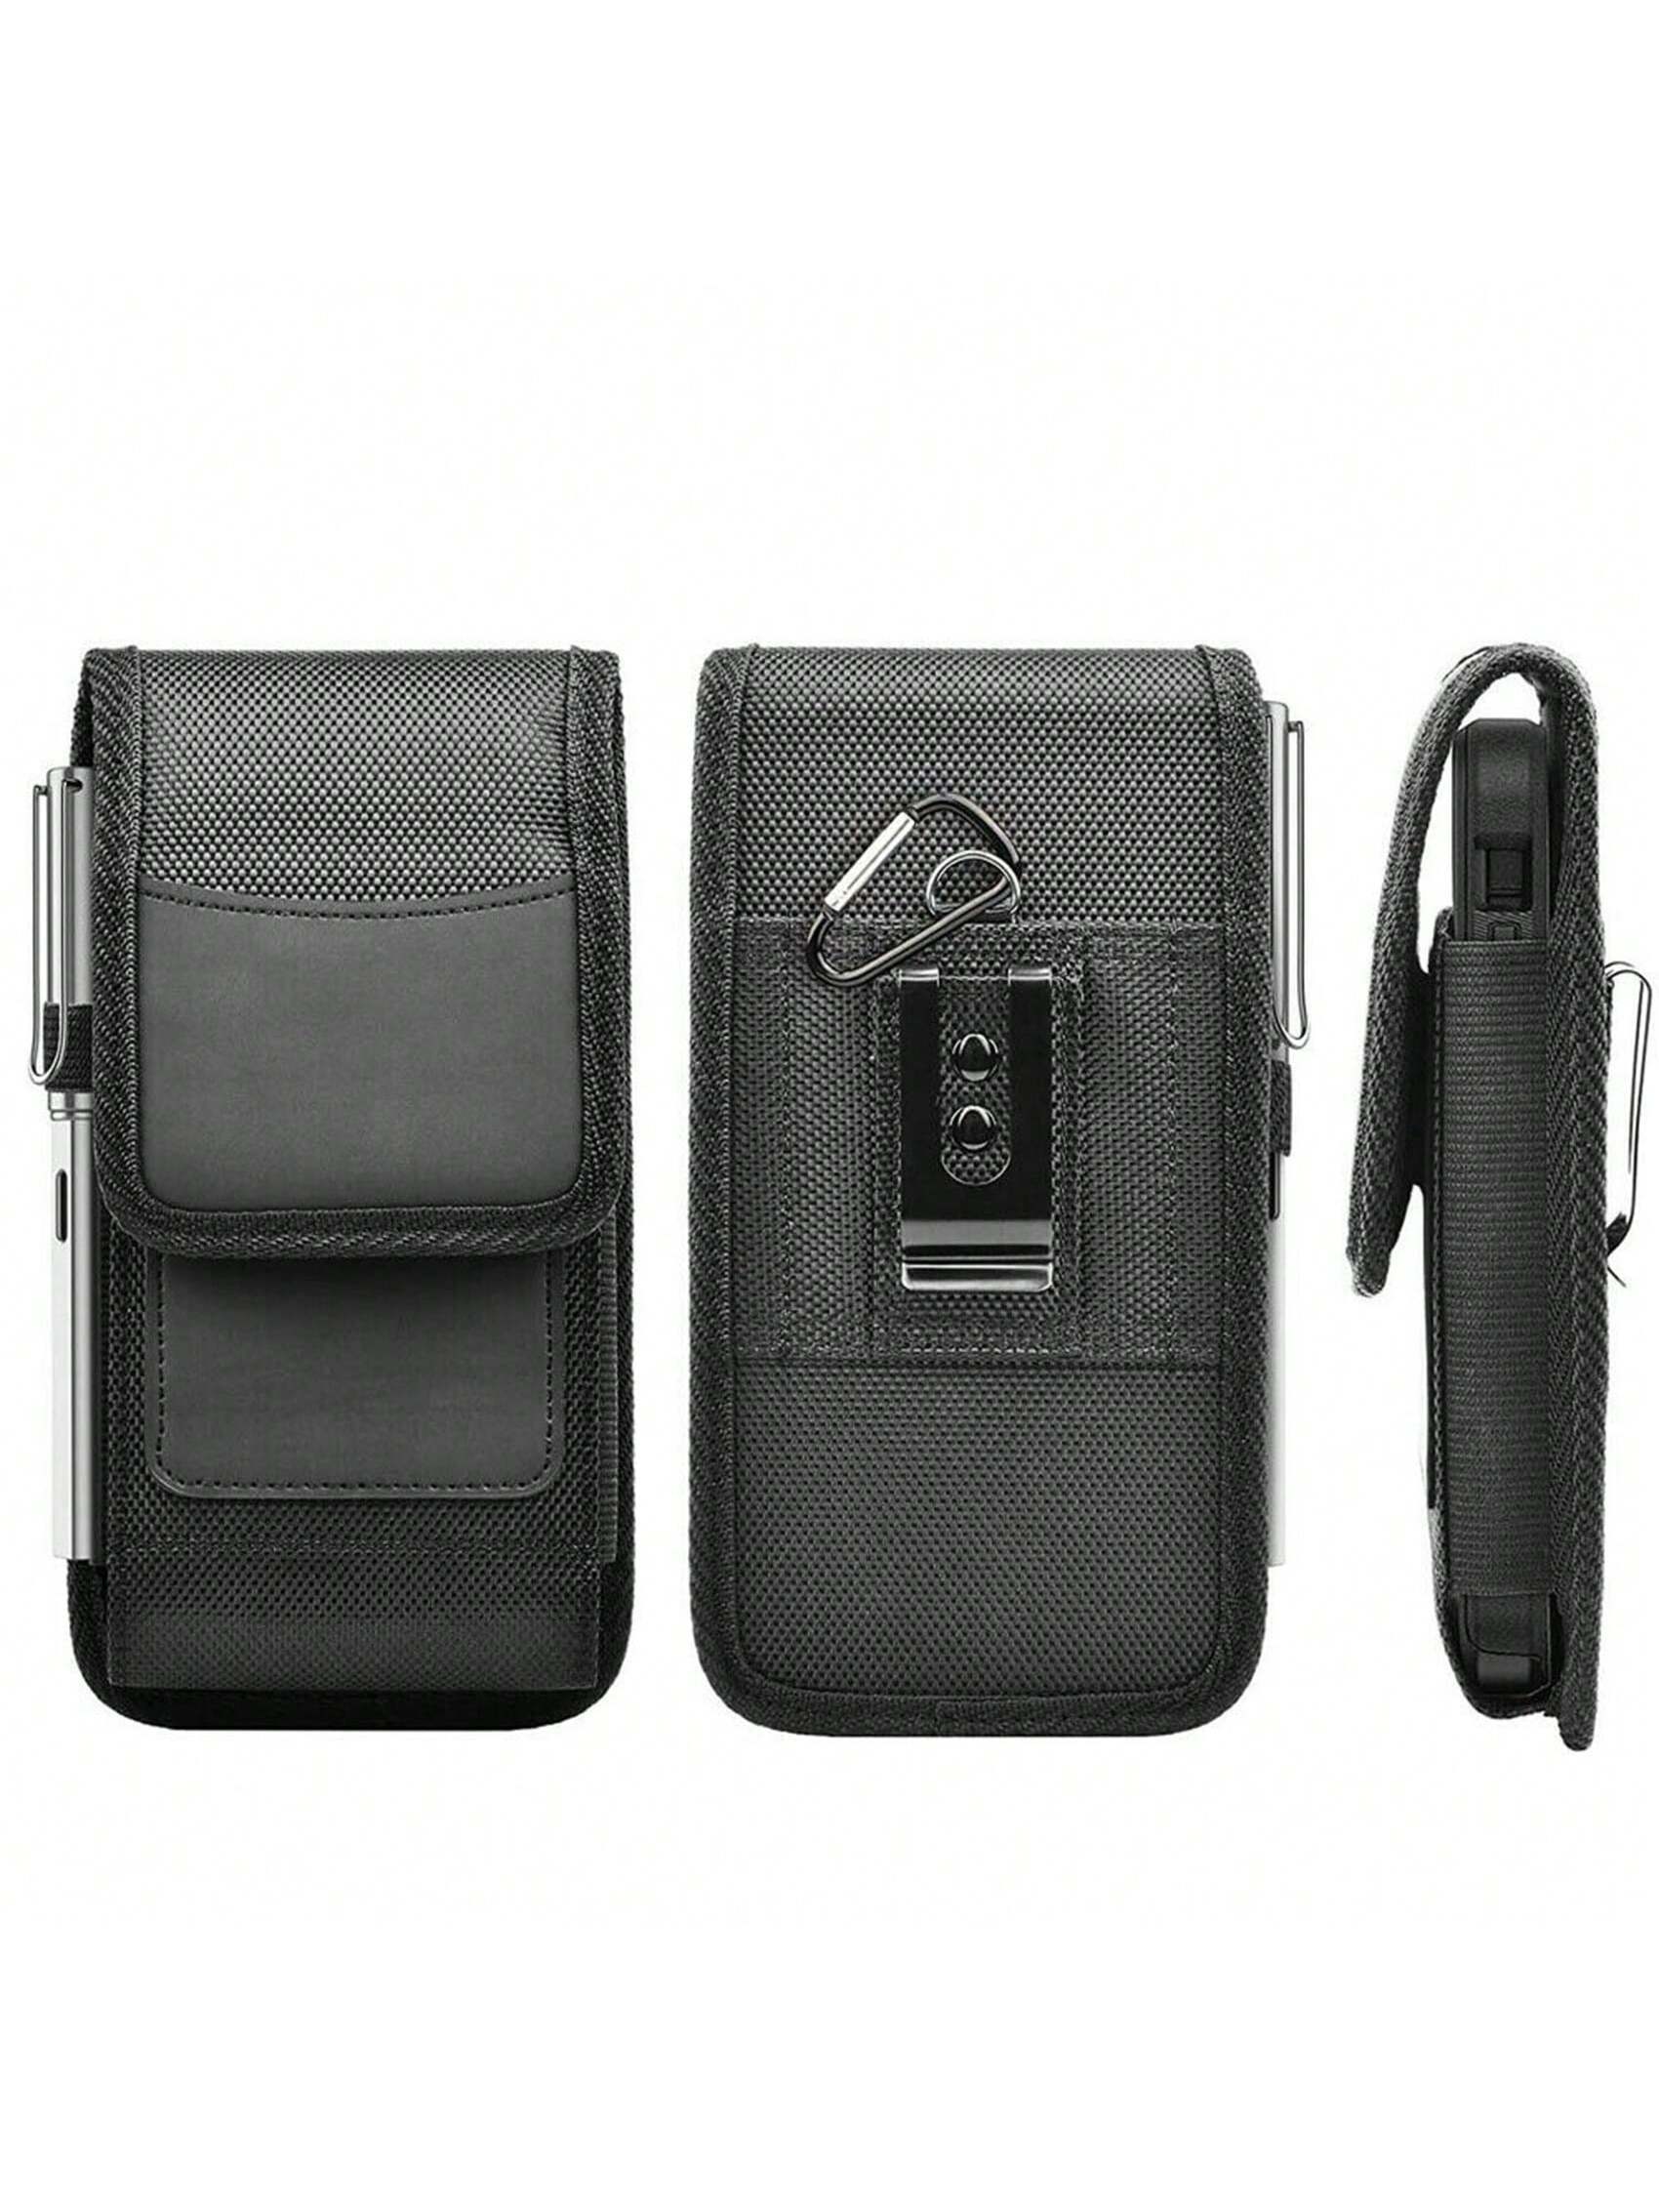 цена Многофункциональная легкая нейлоновая сумка для телефона из 1 шт.: водонепроницаемая поясная сумка в минималистском стиле, черный